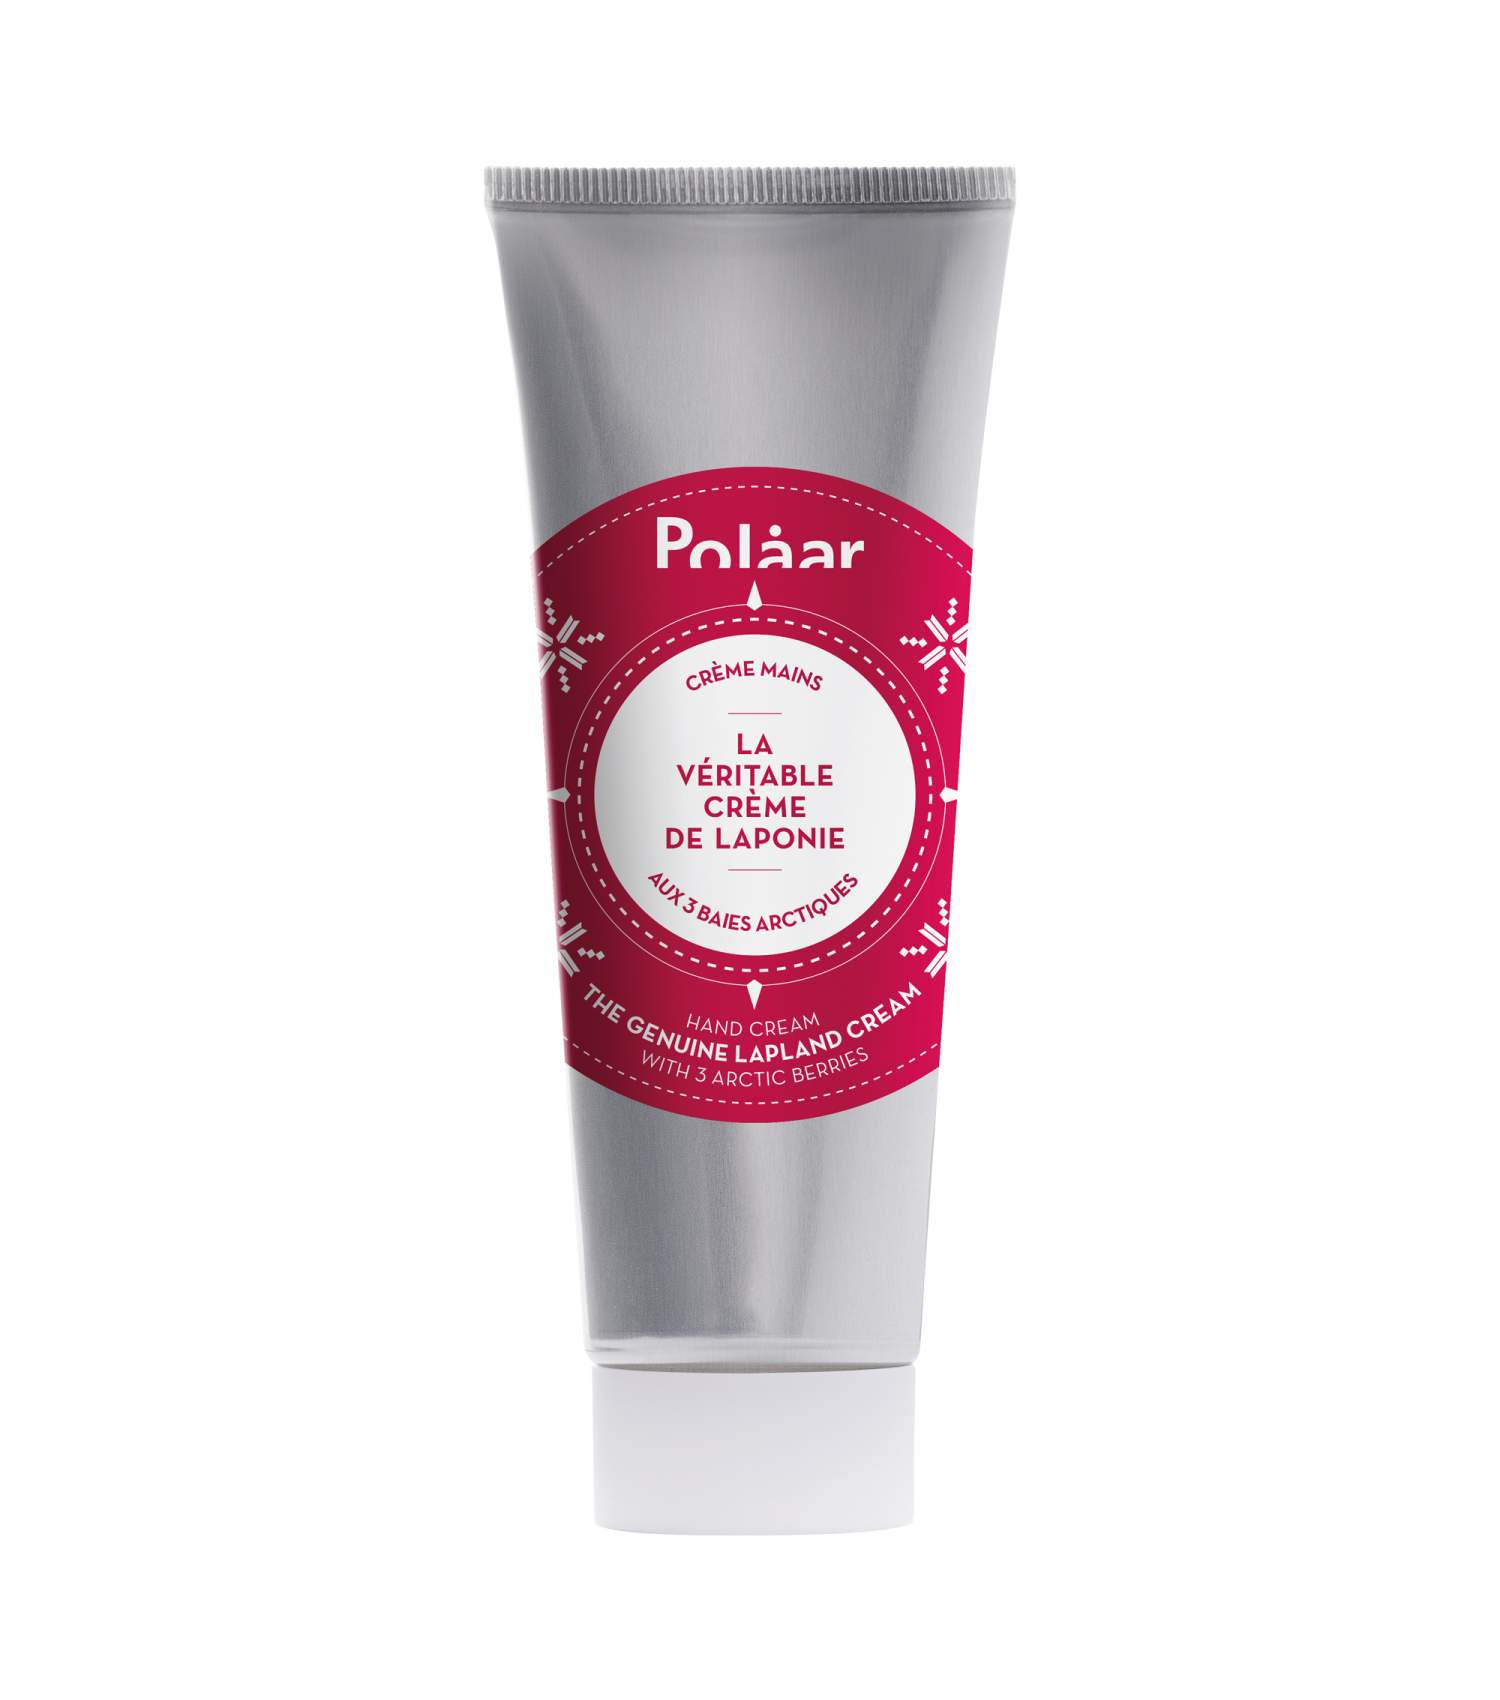 Polaar Hand Cream The Genuine Lapland Cream with 3 arctic berries